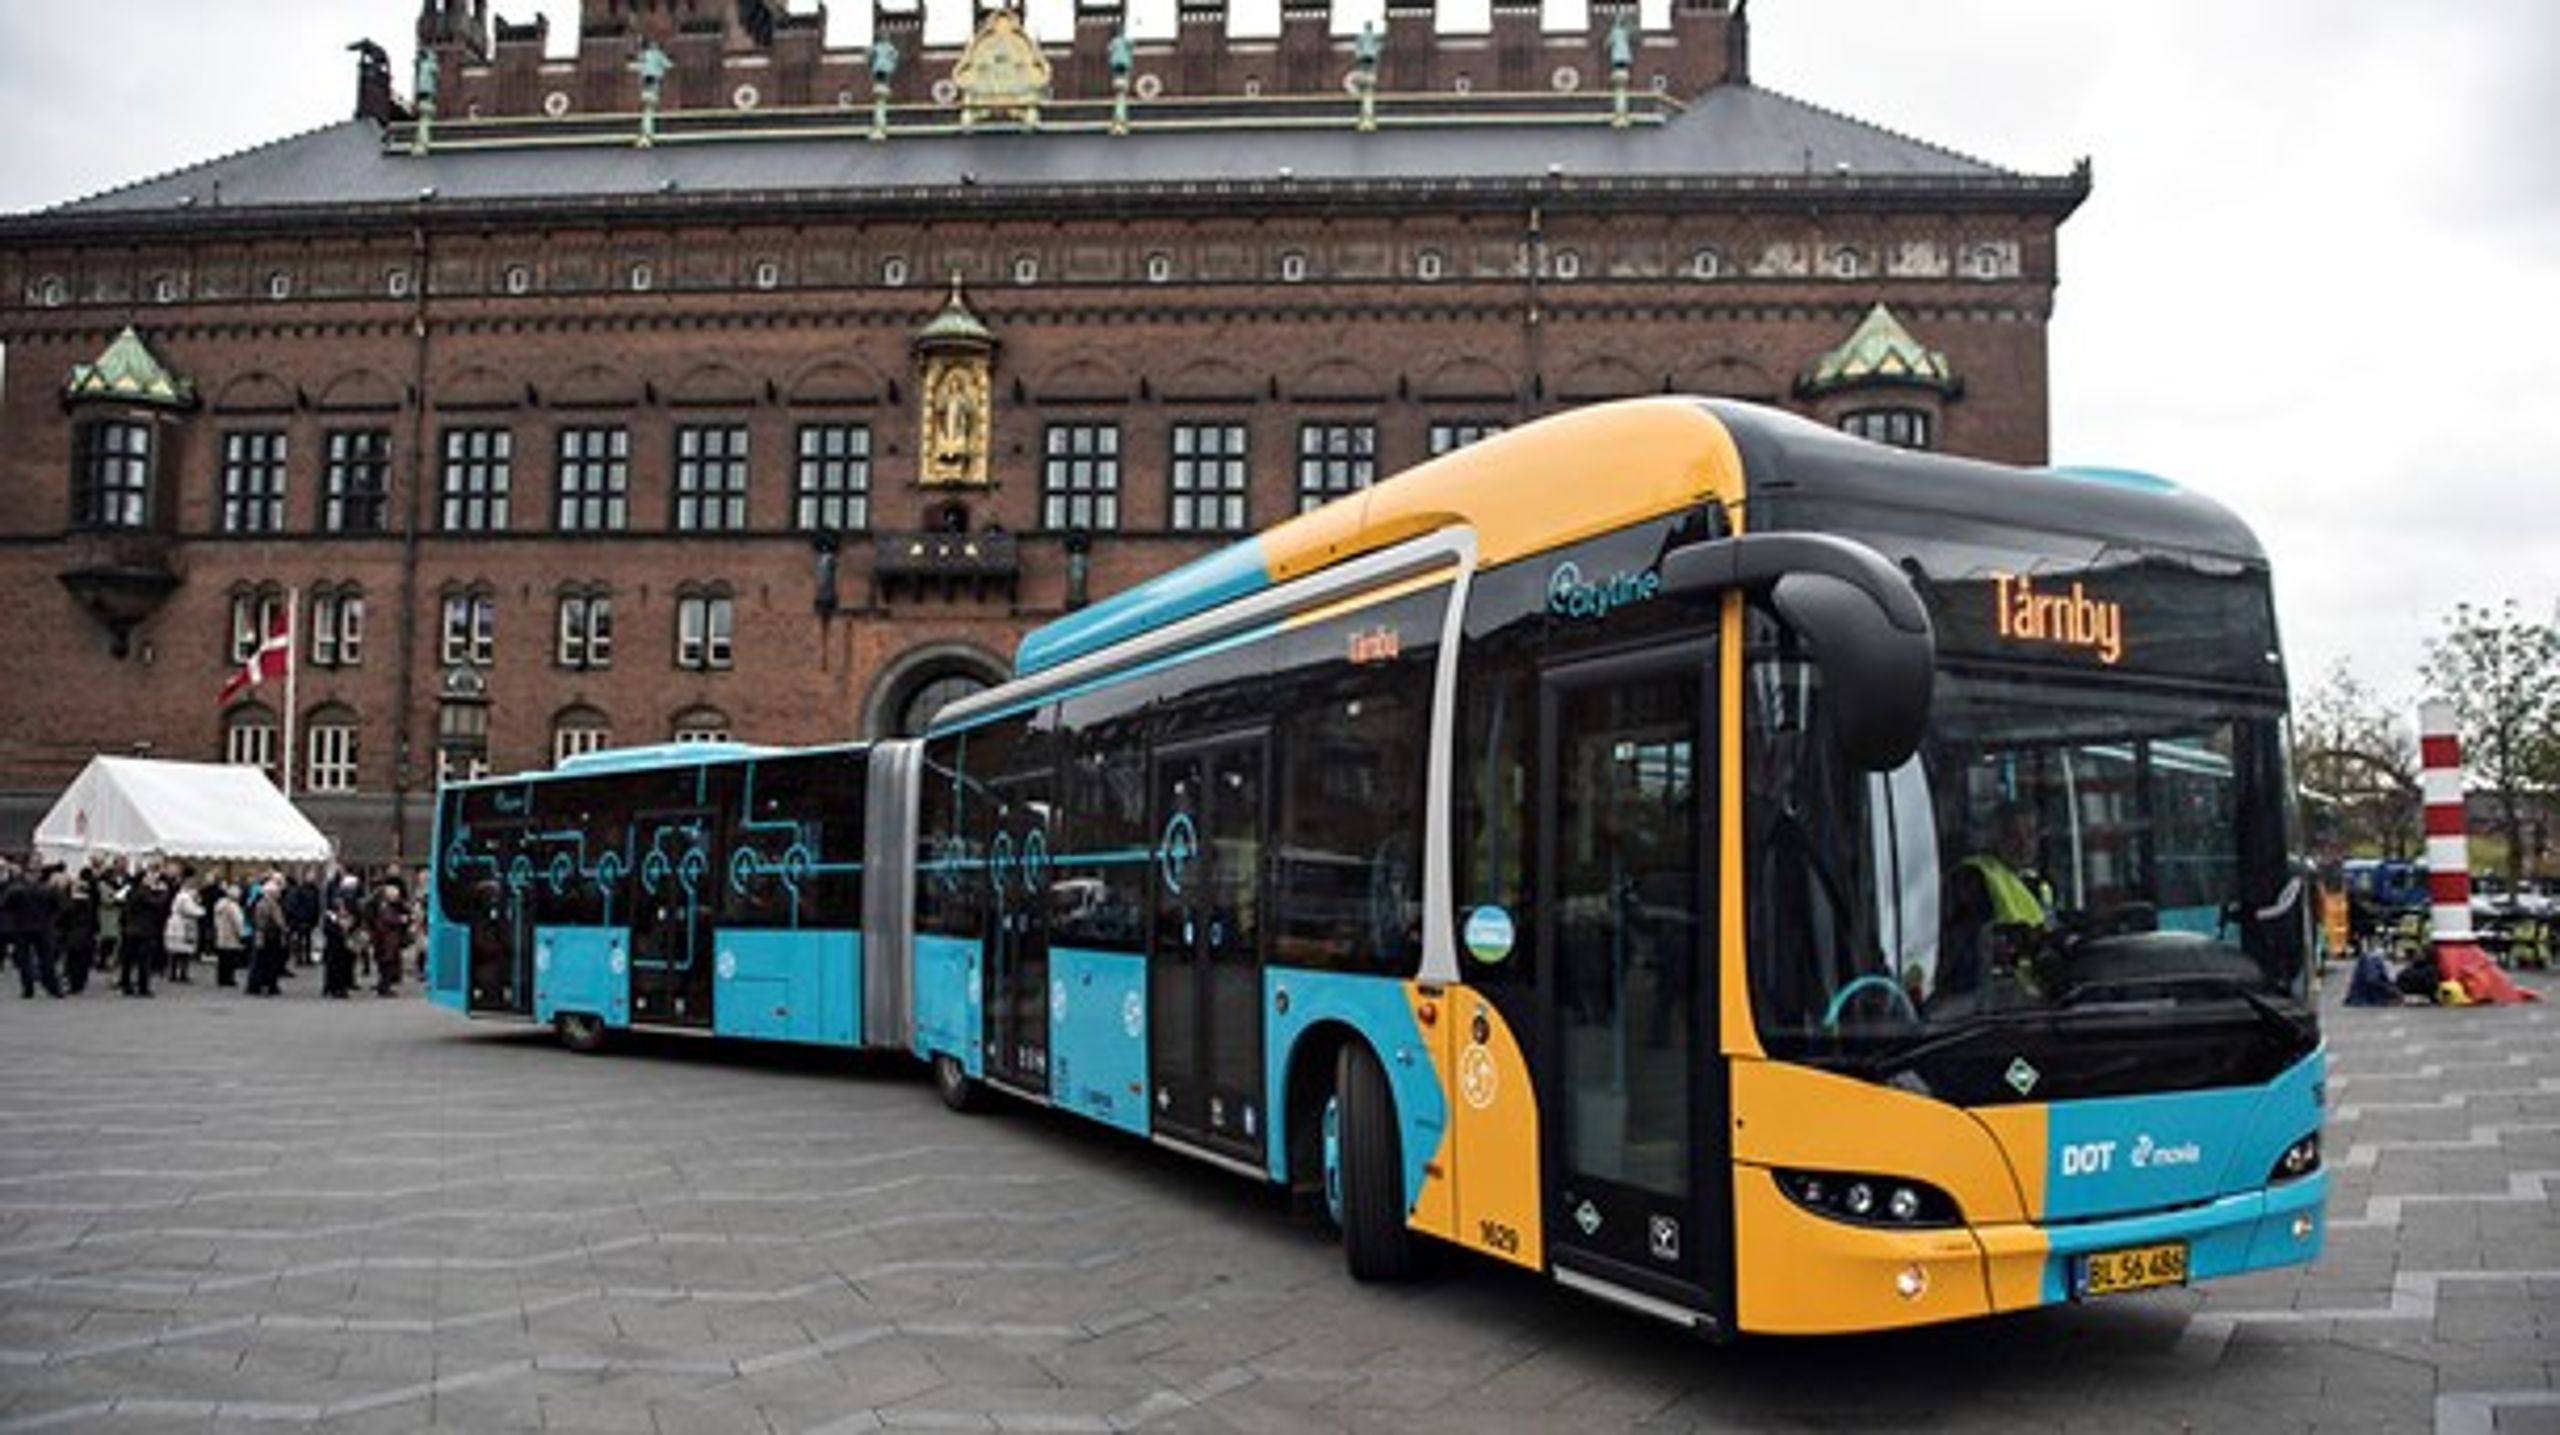 Hovedstaden har fået nye store busser, som også har krævet investeringer i særlige busbaner og holdestede. Begrænsede finansieringsmuligheder og investeringsrum begrænser den slags løft af den kollektive trafik.